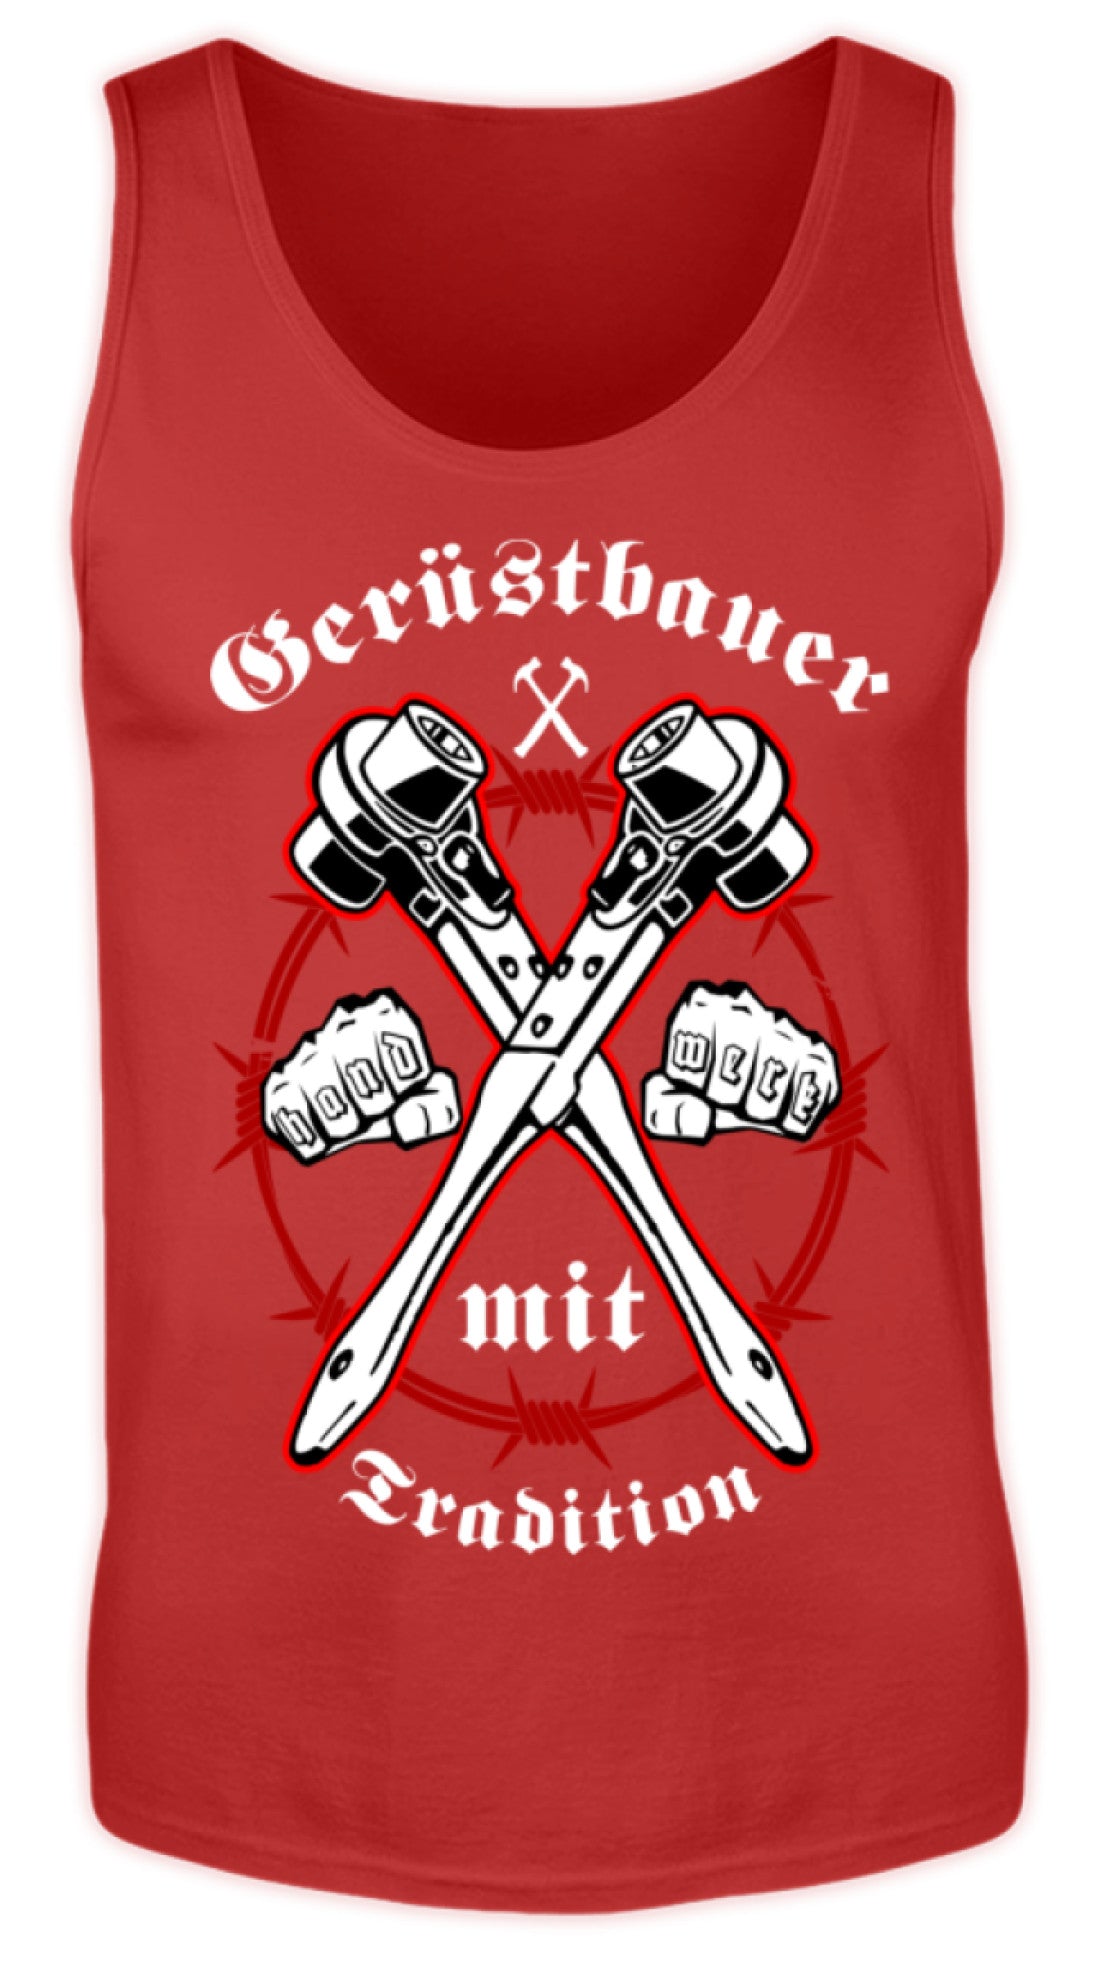 Gerüstbauer - Handwerk mit Tradition  - Herren Tanktop €19.95 Gerüstbauer - Shop >>